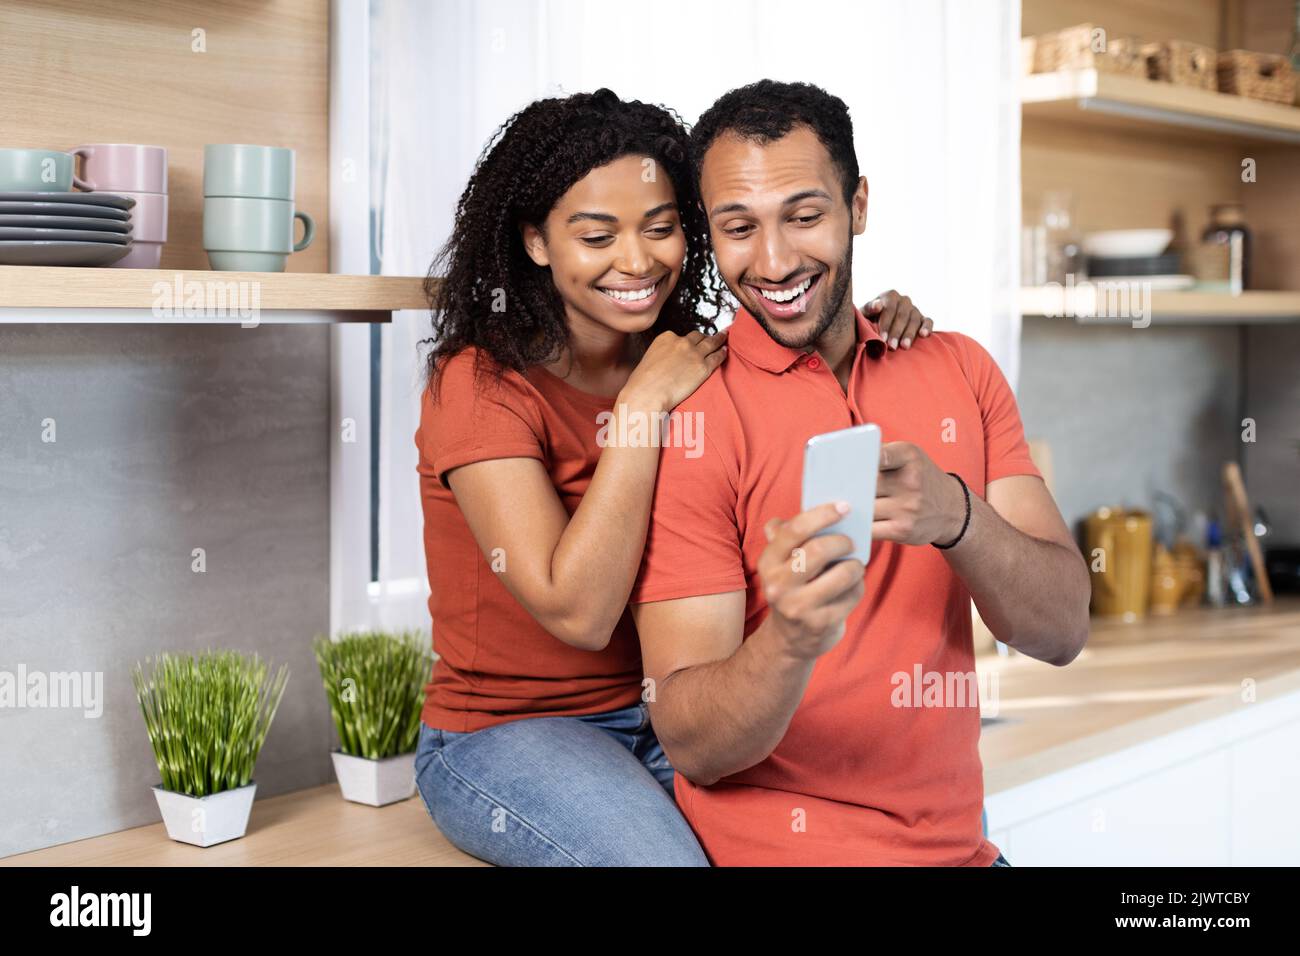 Lächelnde junge afroamerikanische Männer und Frauen in gleichen T-Shirts führen einen Videoanruf auf dem Smartphone oder schauen sich ein Video an Stockfoto